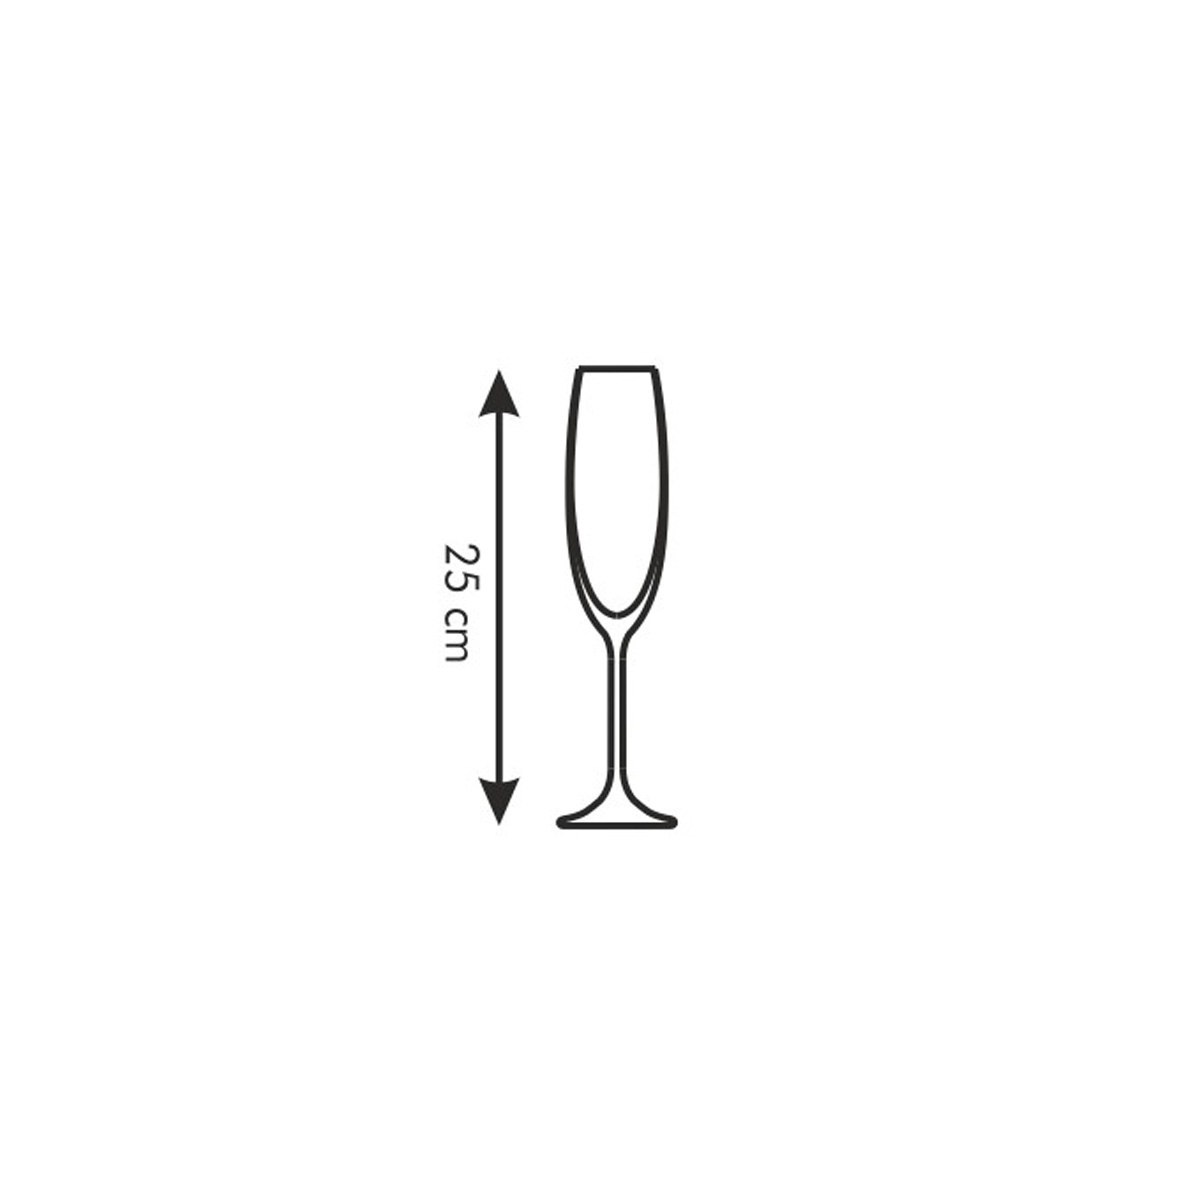 Poháre na šampanské Sommelier 210 ml, 6 ks